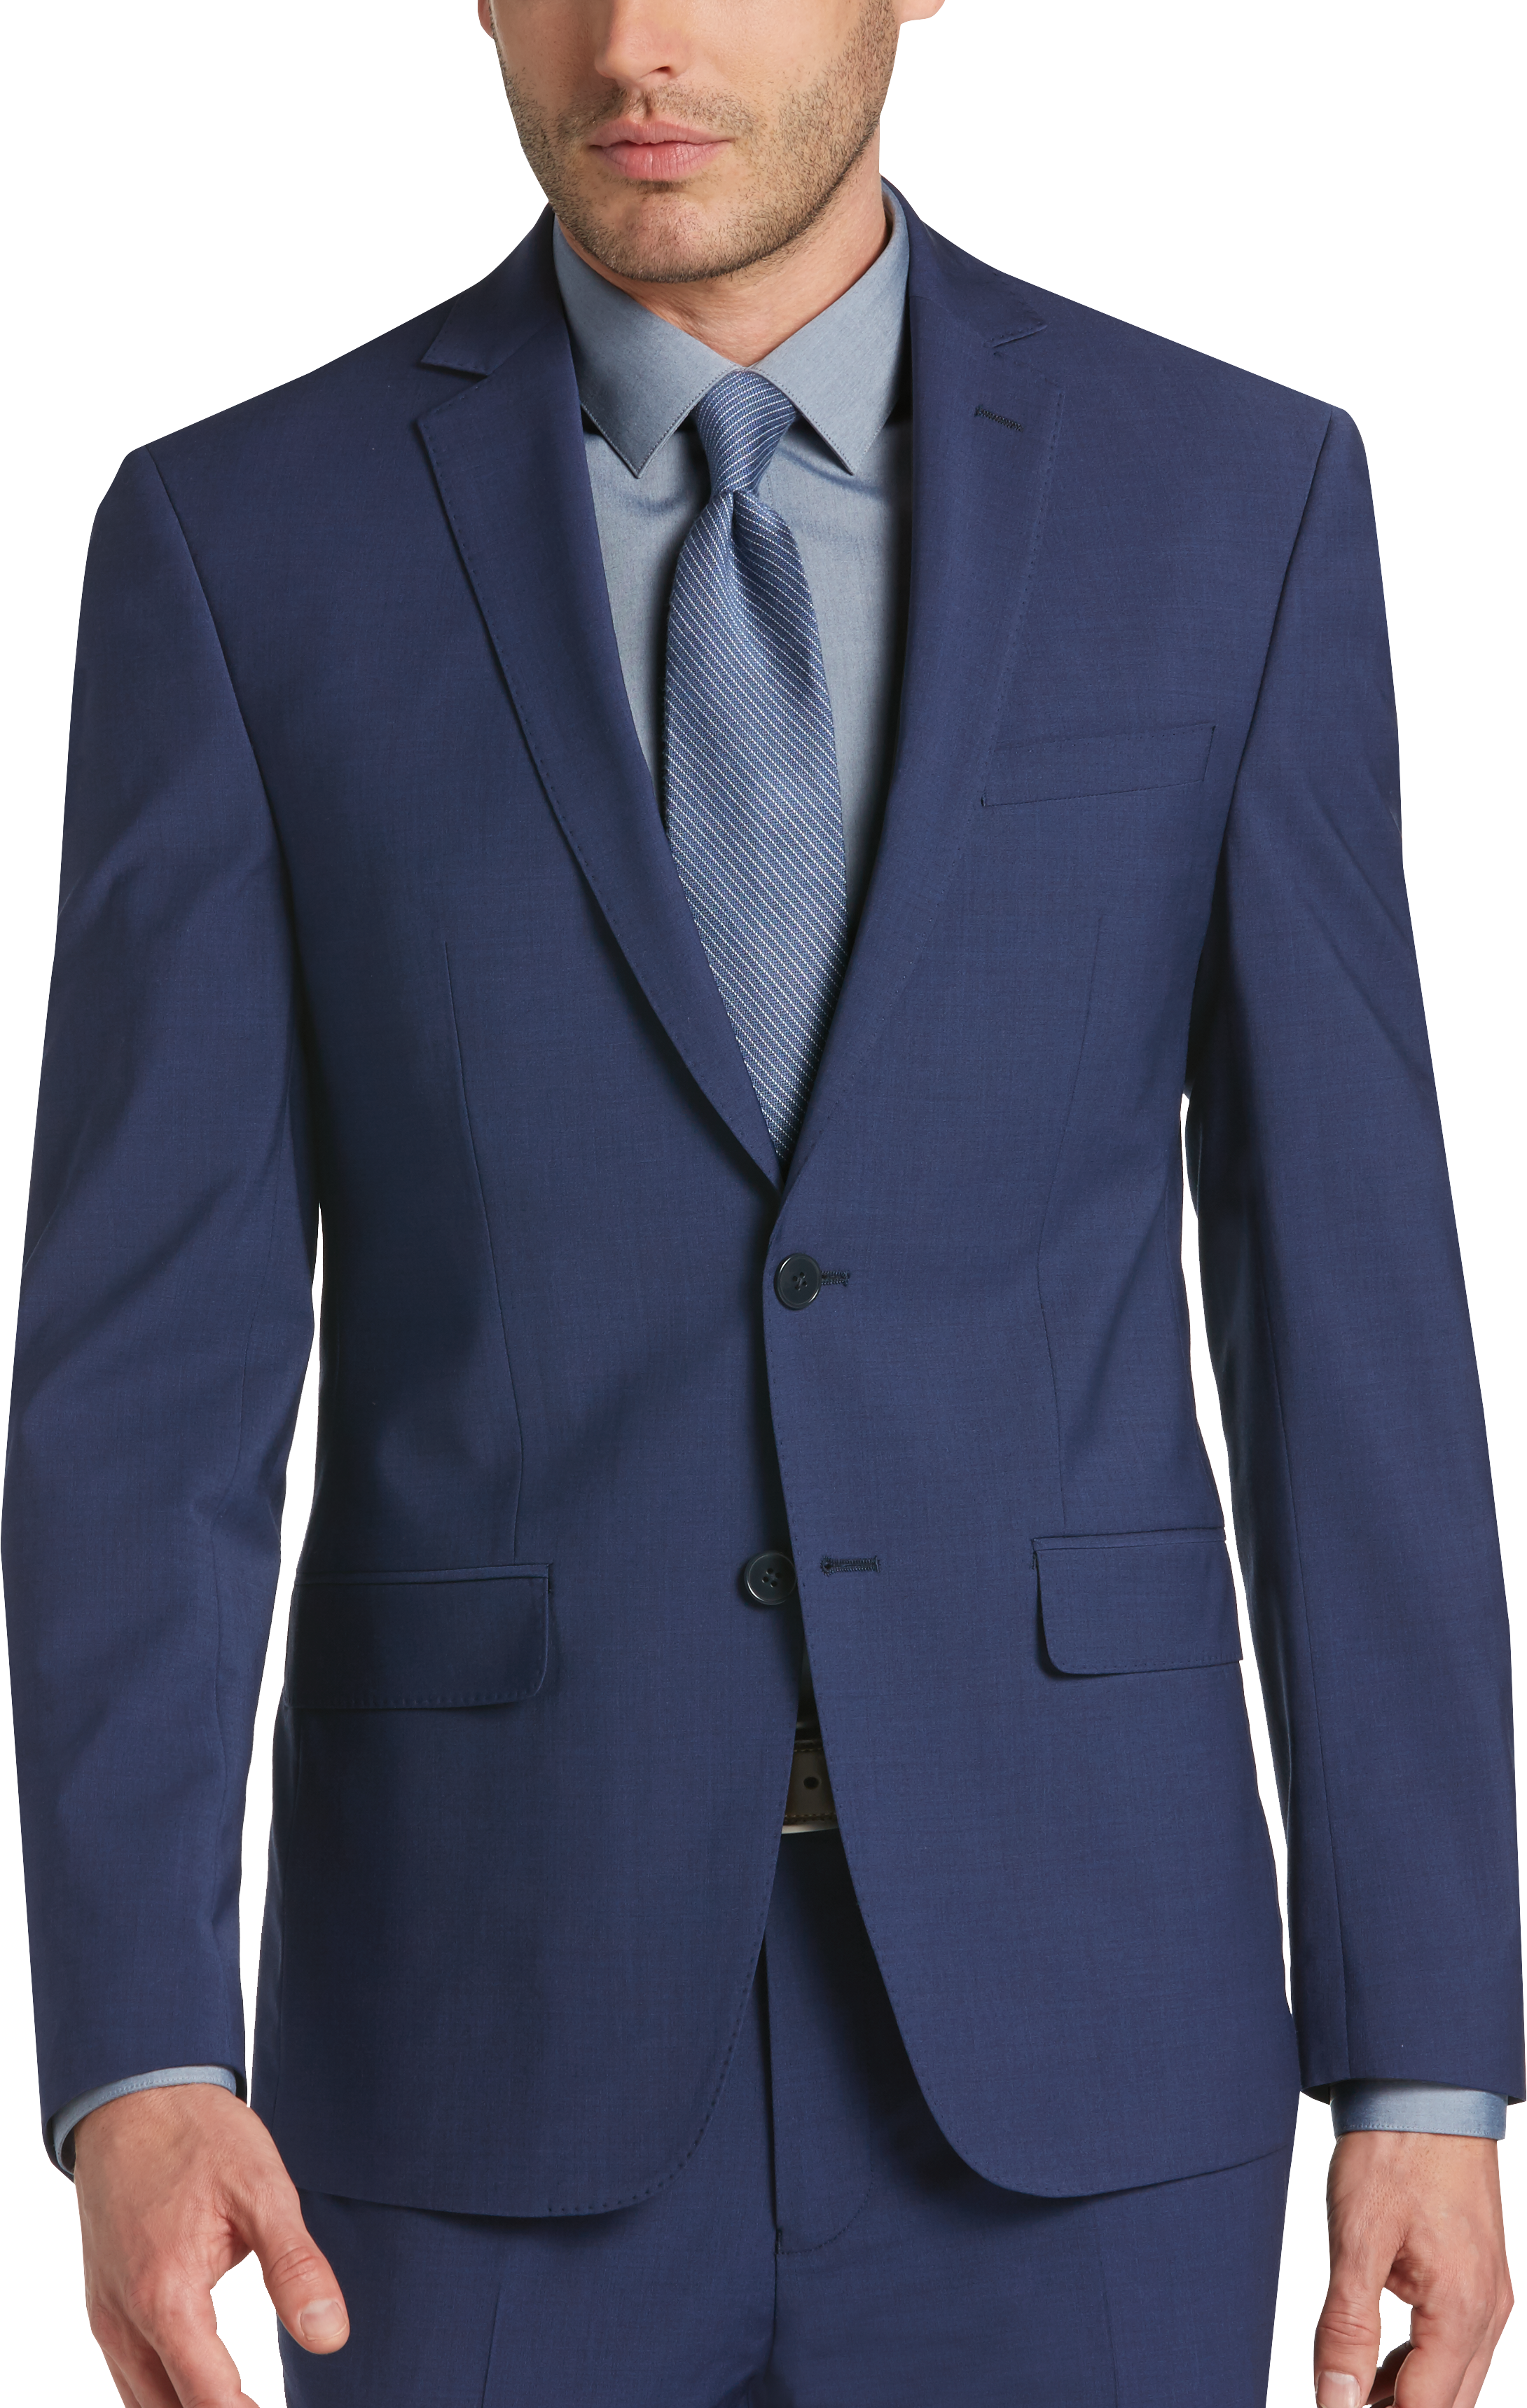 calvin klein blue extreme slim fit suit